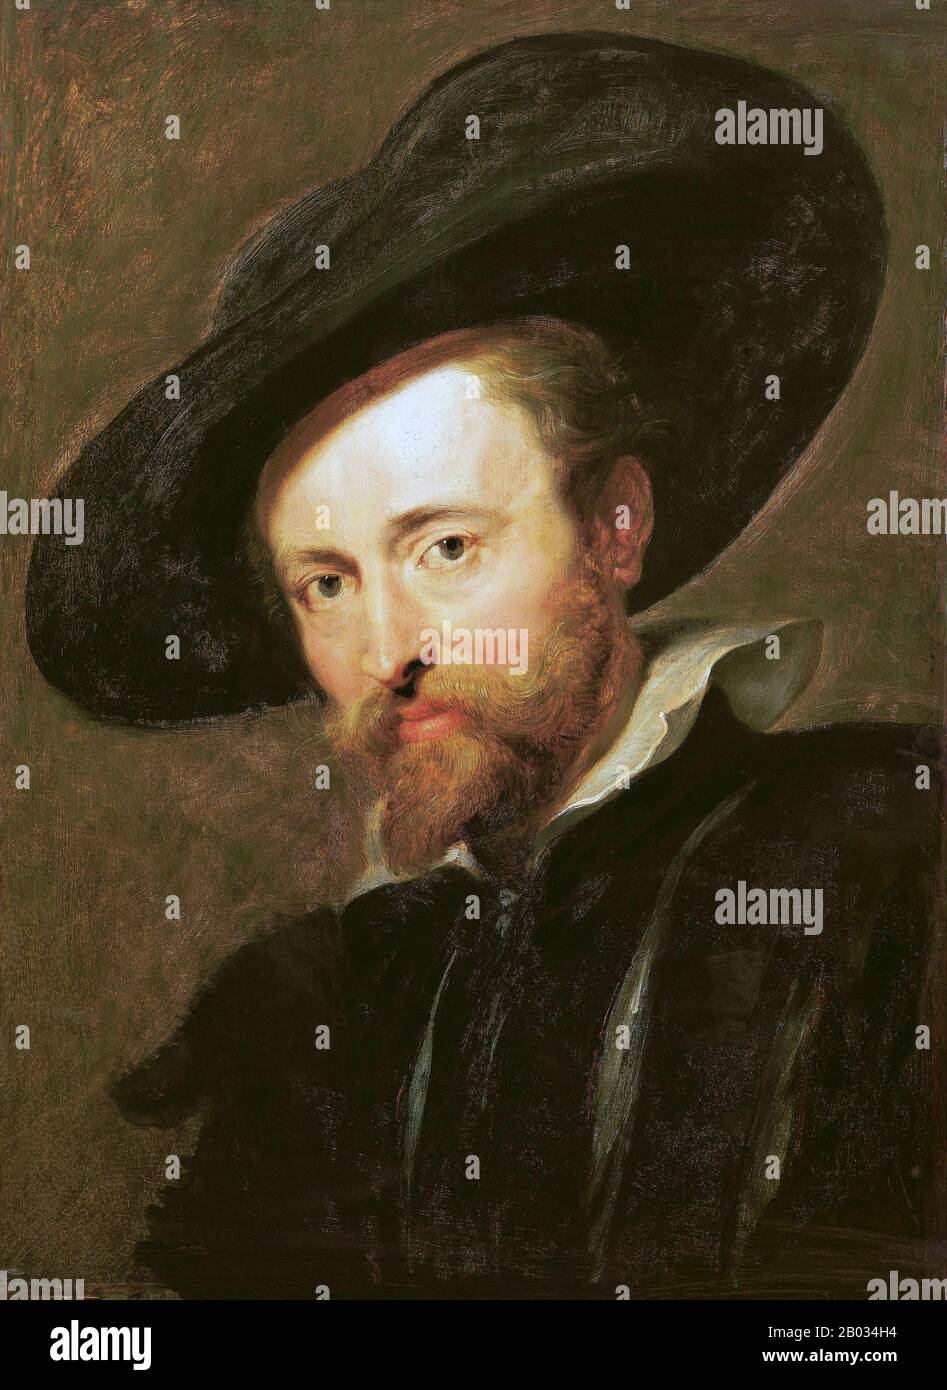 Sir Peter Paul Rubens (28 juin 1577 – 30 mai 1640) était un peintre baroque flamand. Partisan d'un style baroque extravagant qui met l'accent sur le mouvement, la couleur et la sensualité, Rubens est bien connu pour ses altartes de contre-réforme, ses portraits, ses paysages et ses peintures d'histoire de sujets mythologiques et allégoriques. En plus de gérer un grand studio à Anvers qui a produit des peintures populaires avec noblesse et collectionneurs d'art dans toute l'Europe, Rubens était un humaniste et diplomate instruit de façon classique et chevalier par Philippe IV d'Espagne et Charles I d'Angleterre. Rubens Banque D'Images